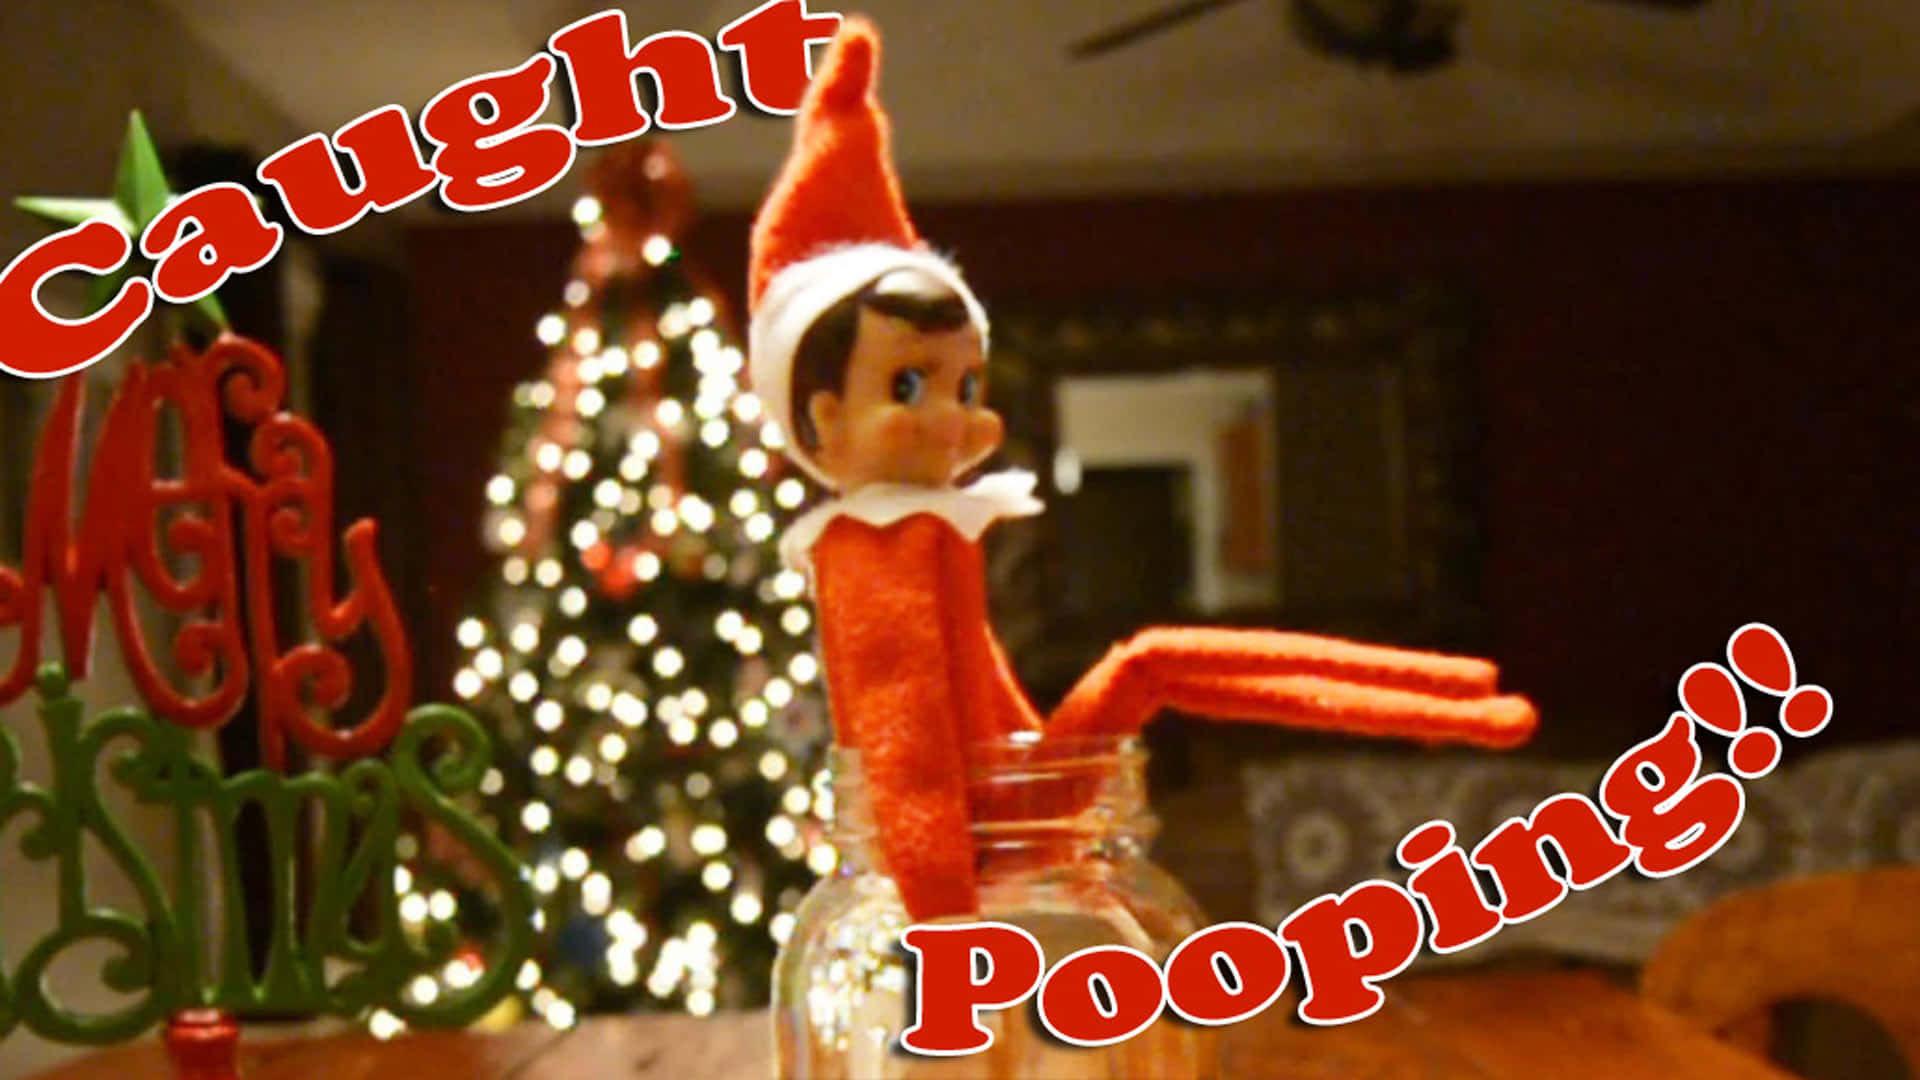 Feiernsie Die Weihnachtszeit Mit Elf On The Shelf!